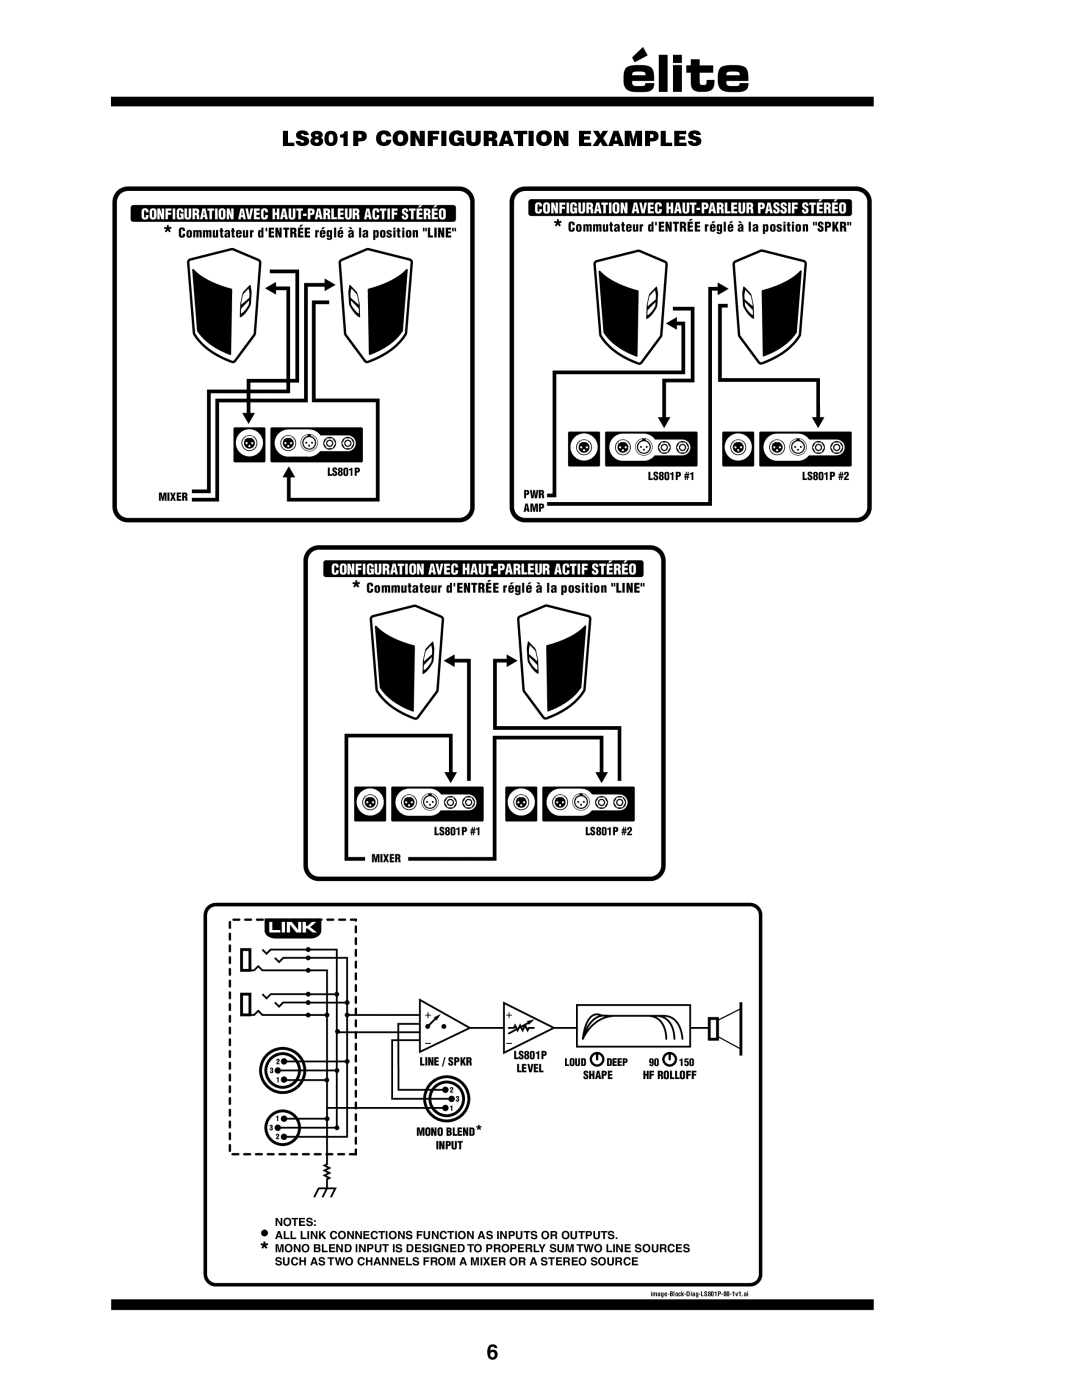 Yorkville Sound owner manual LS801P CONFIGURATION EXAMPLES, Configuration Avec Haut-Parleuractif Stéréo 